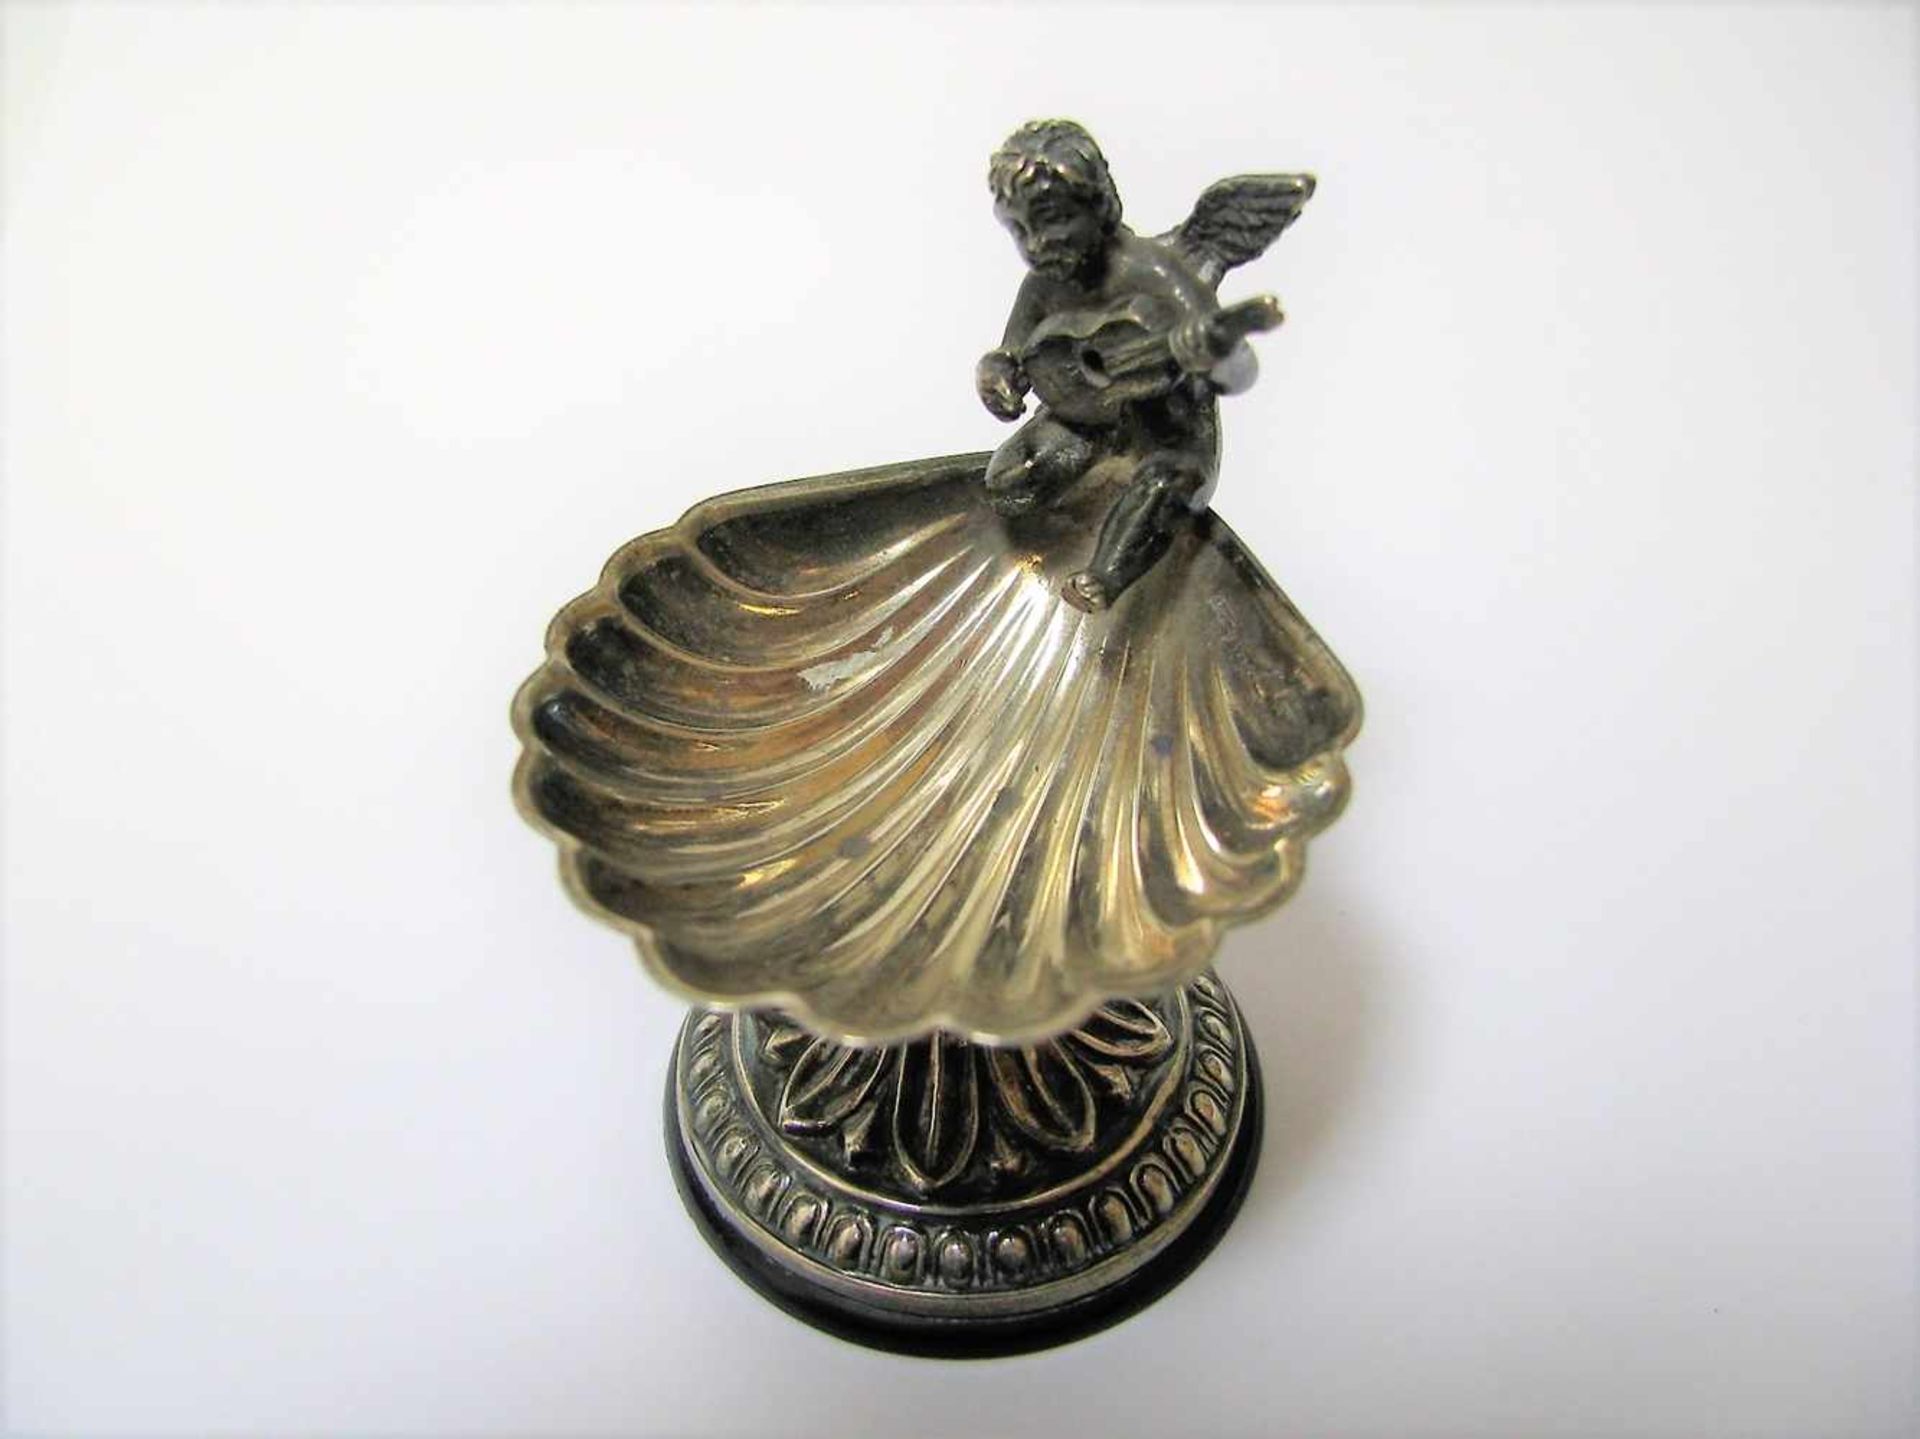 Salière mit musizierendem Putto auf Muschelschale, 835er Silber, gepunzt, h 5,5 cm, d 5 cm. - Bild 2 aus 2